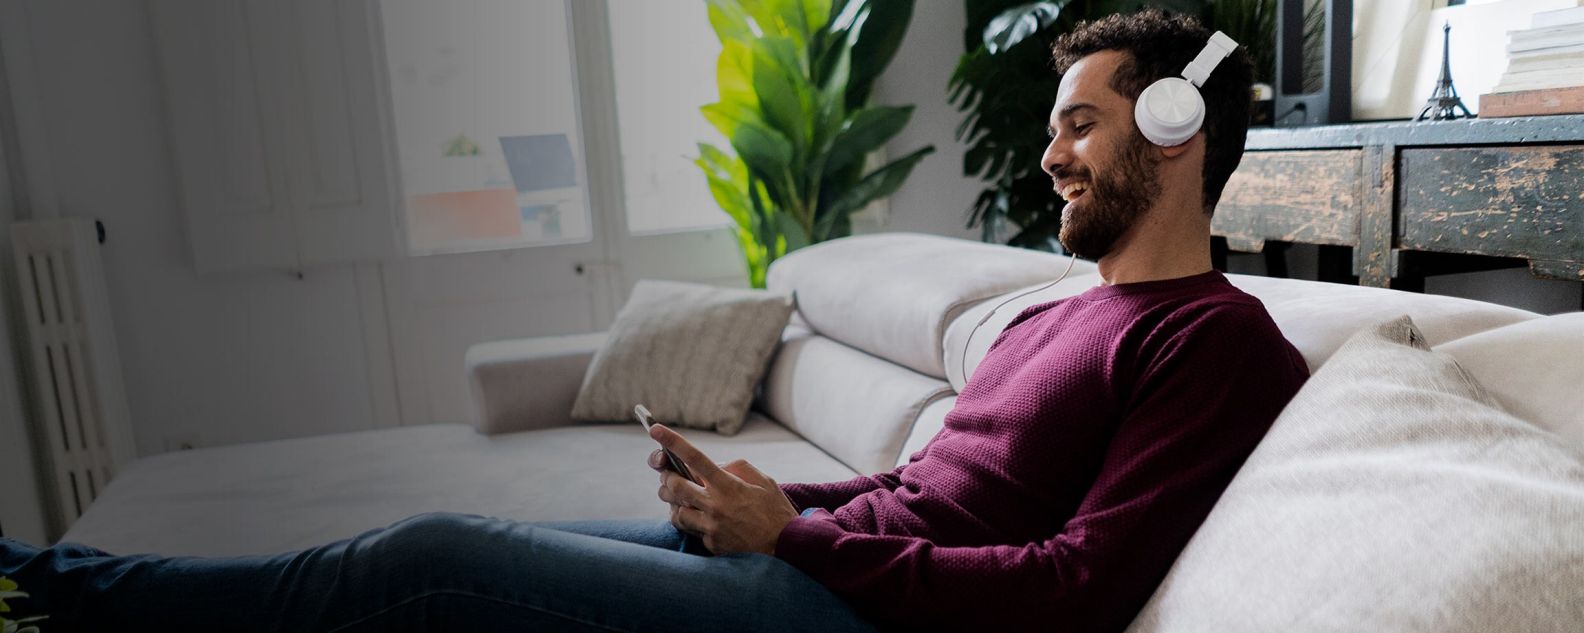 Hombre riendo sentado en el sofá con teléfono móvil y auriculares